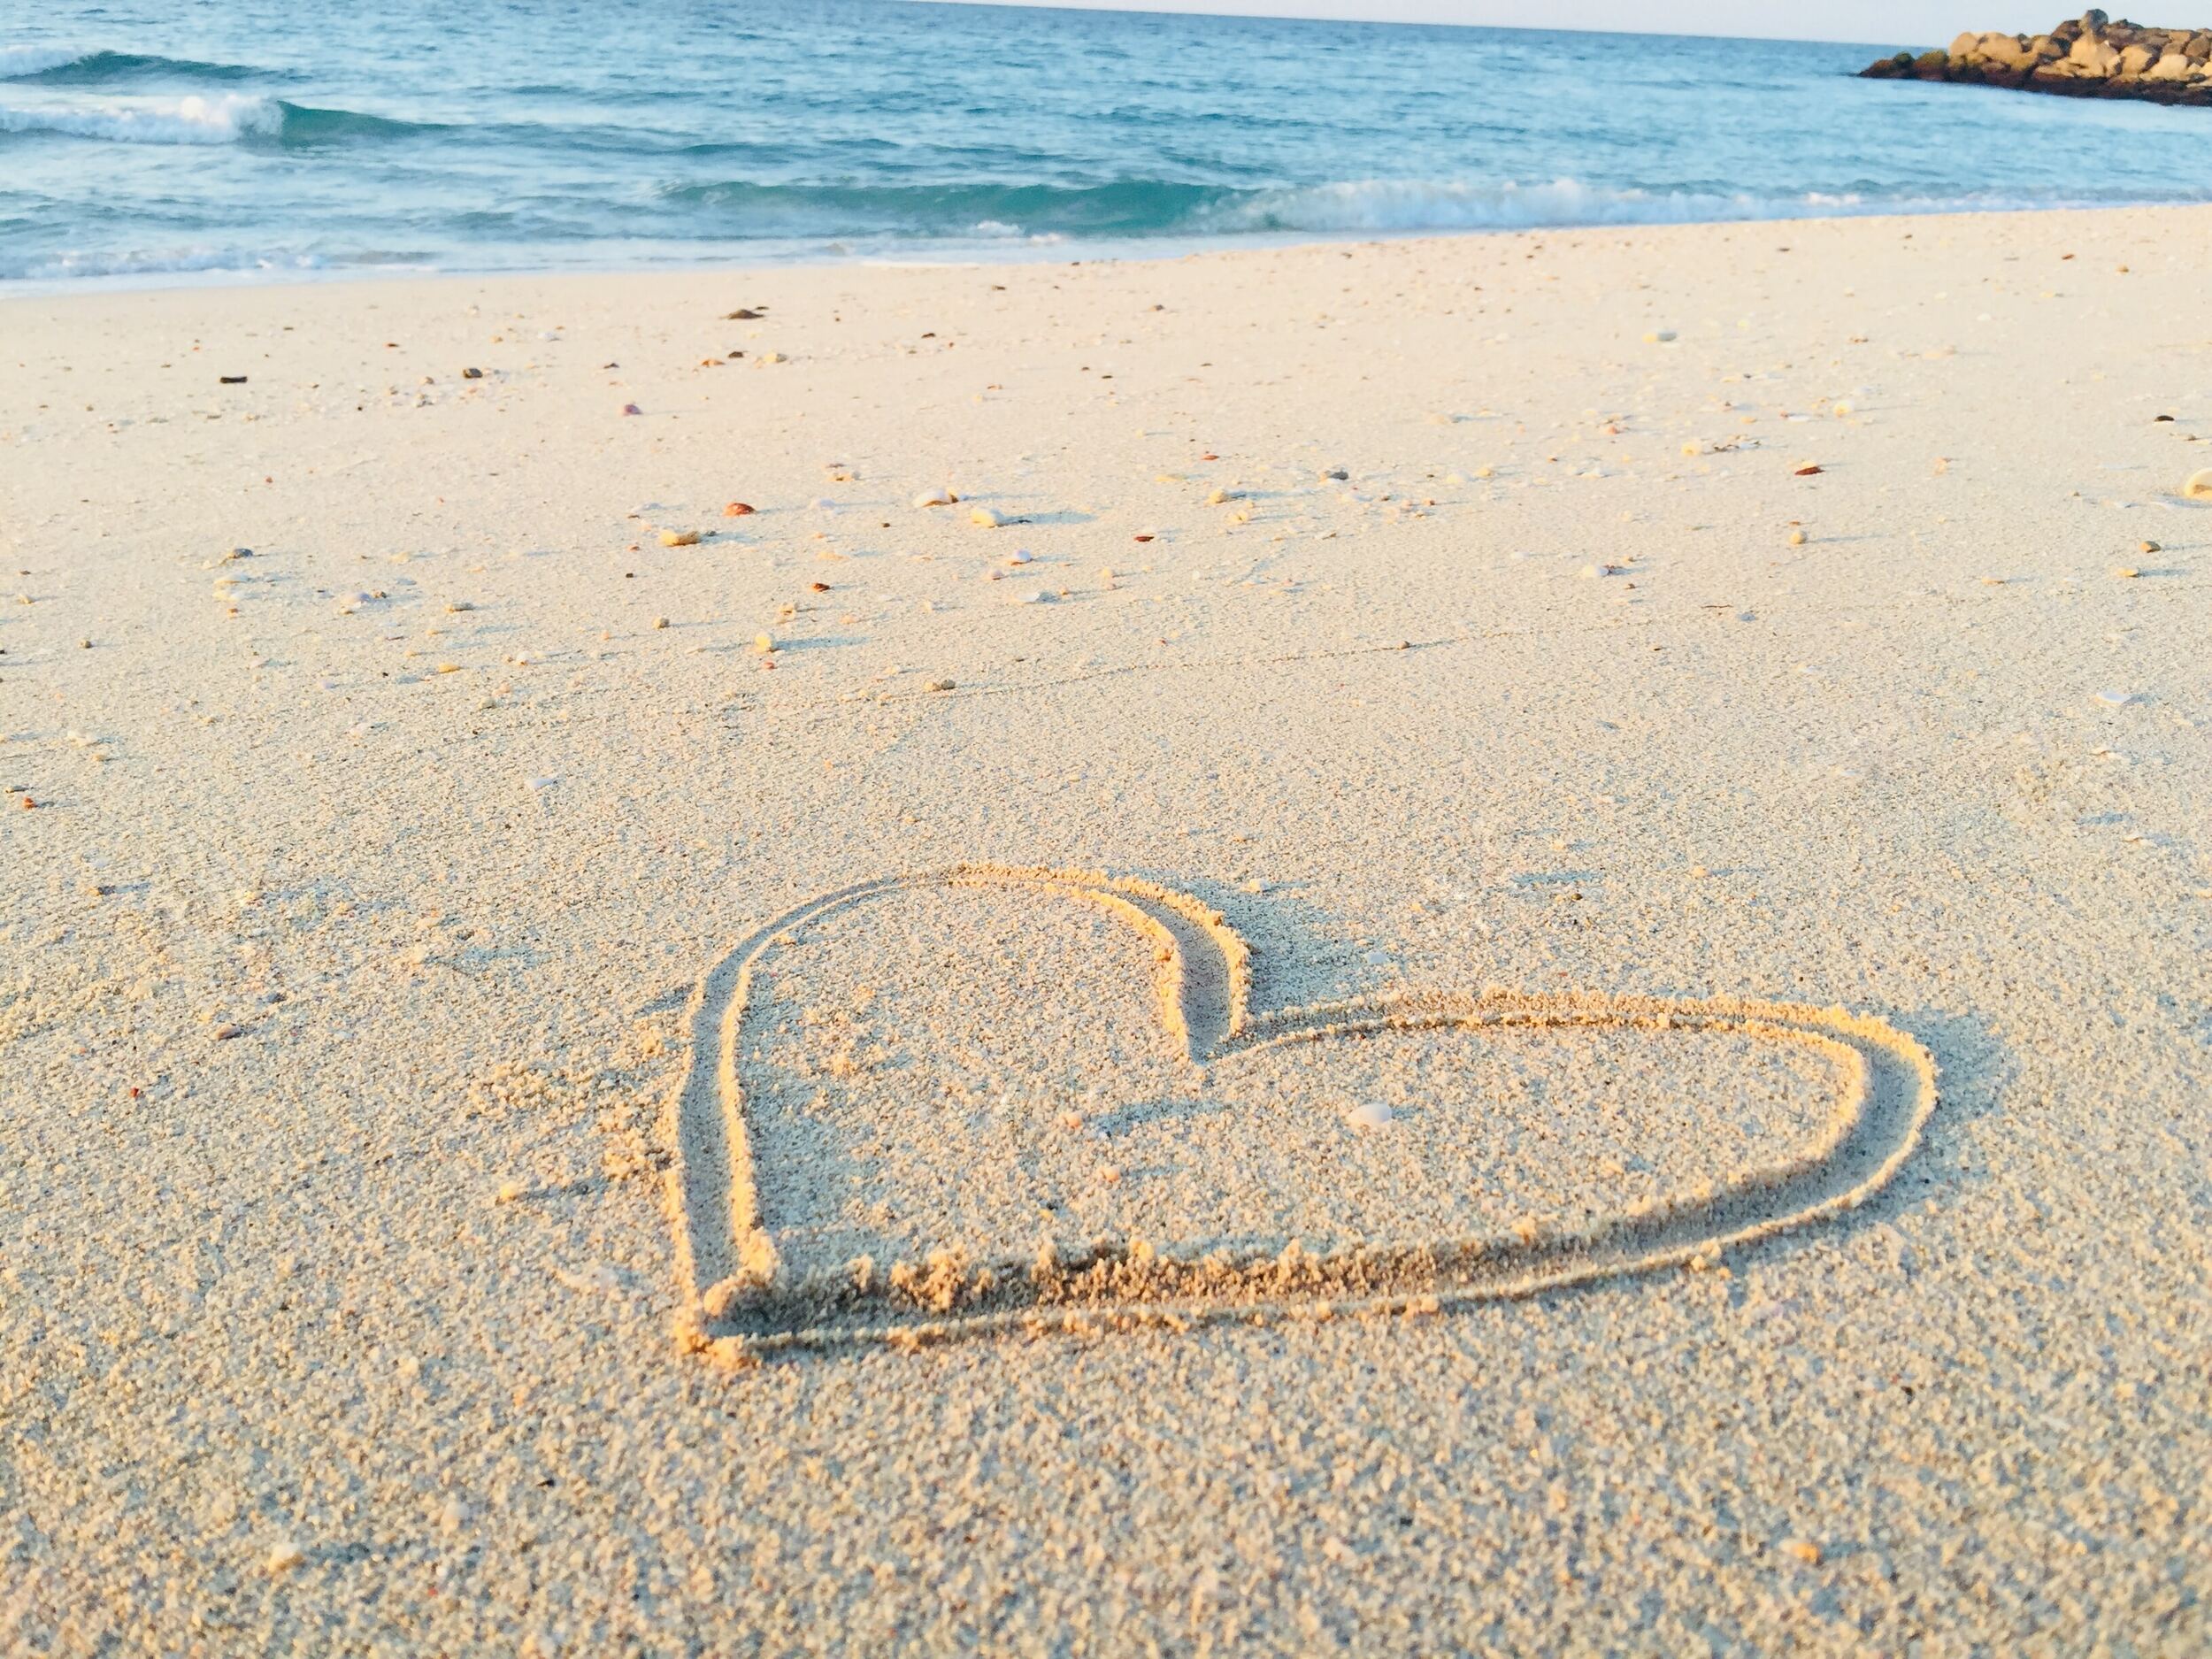 A heart drawn into the sand on a beach.